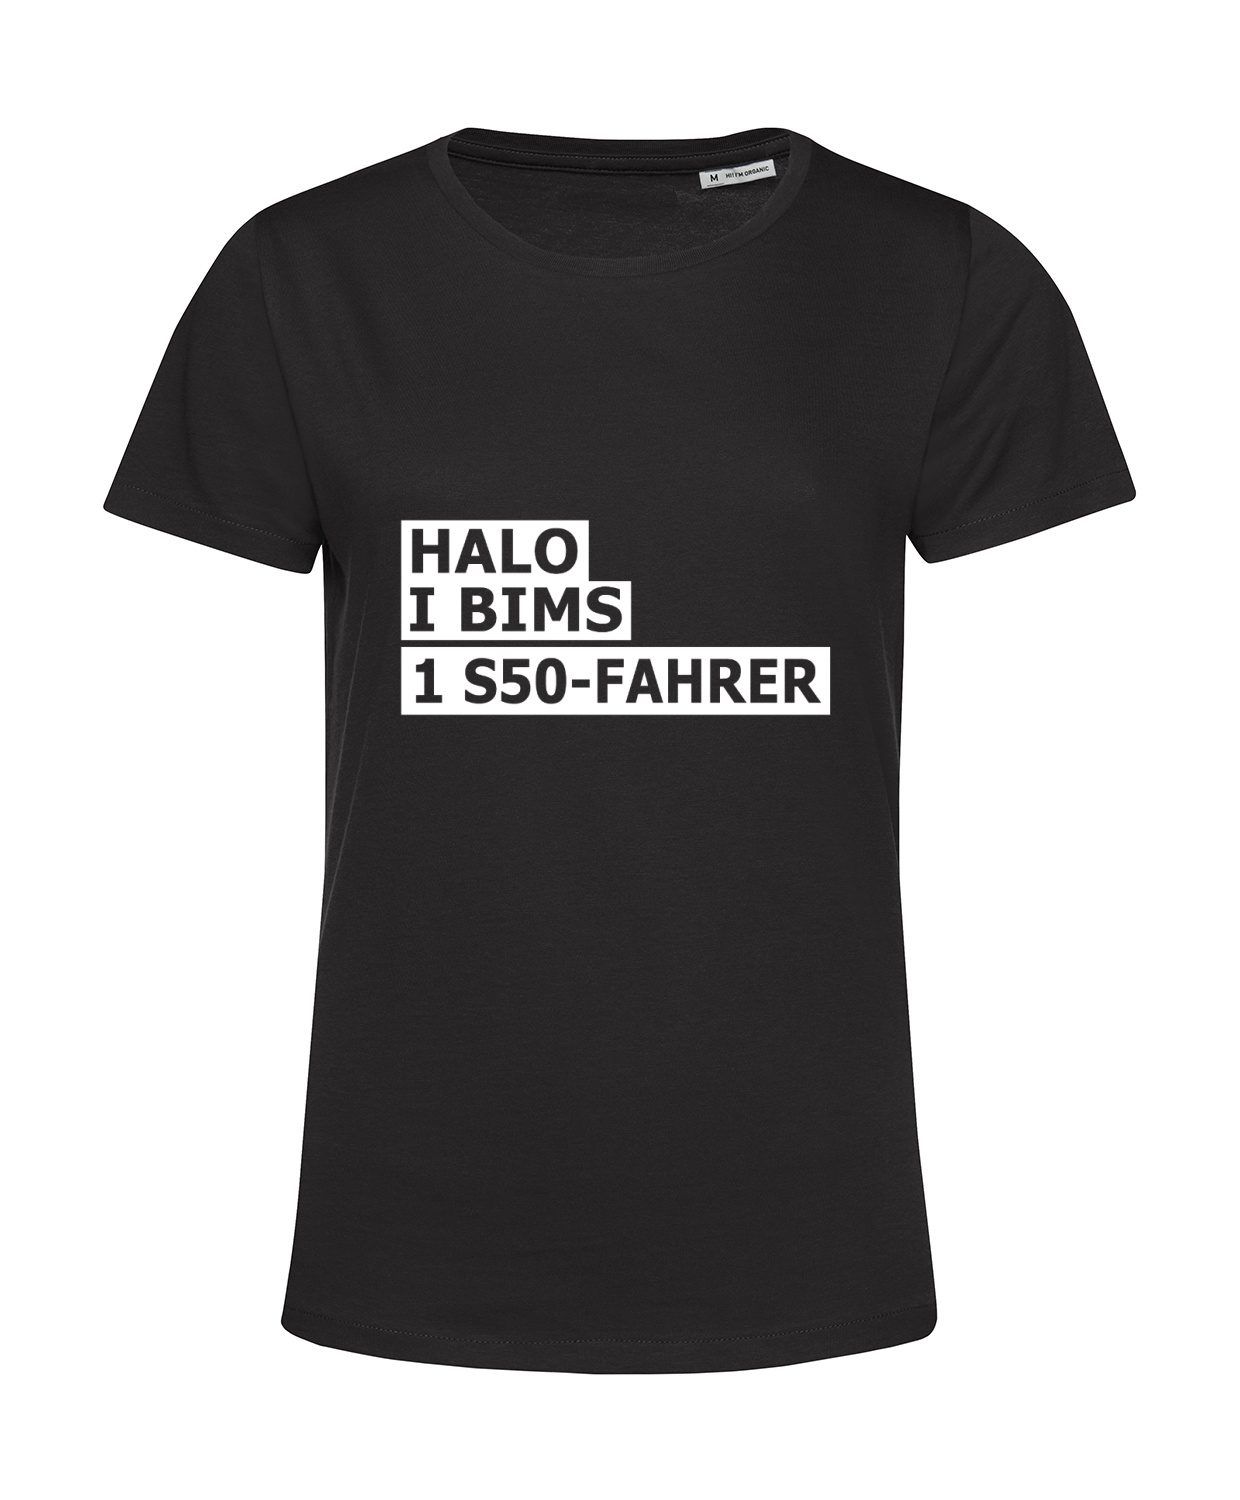 Nachhaltiges T-Shirt Damen 2Takter - Halo I bims 1 S50-Fahrer